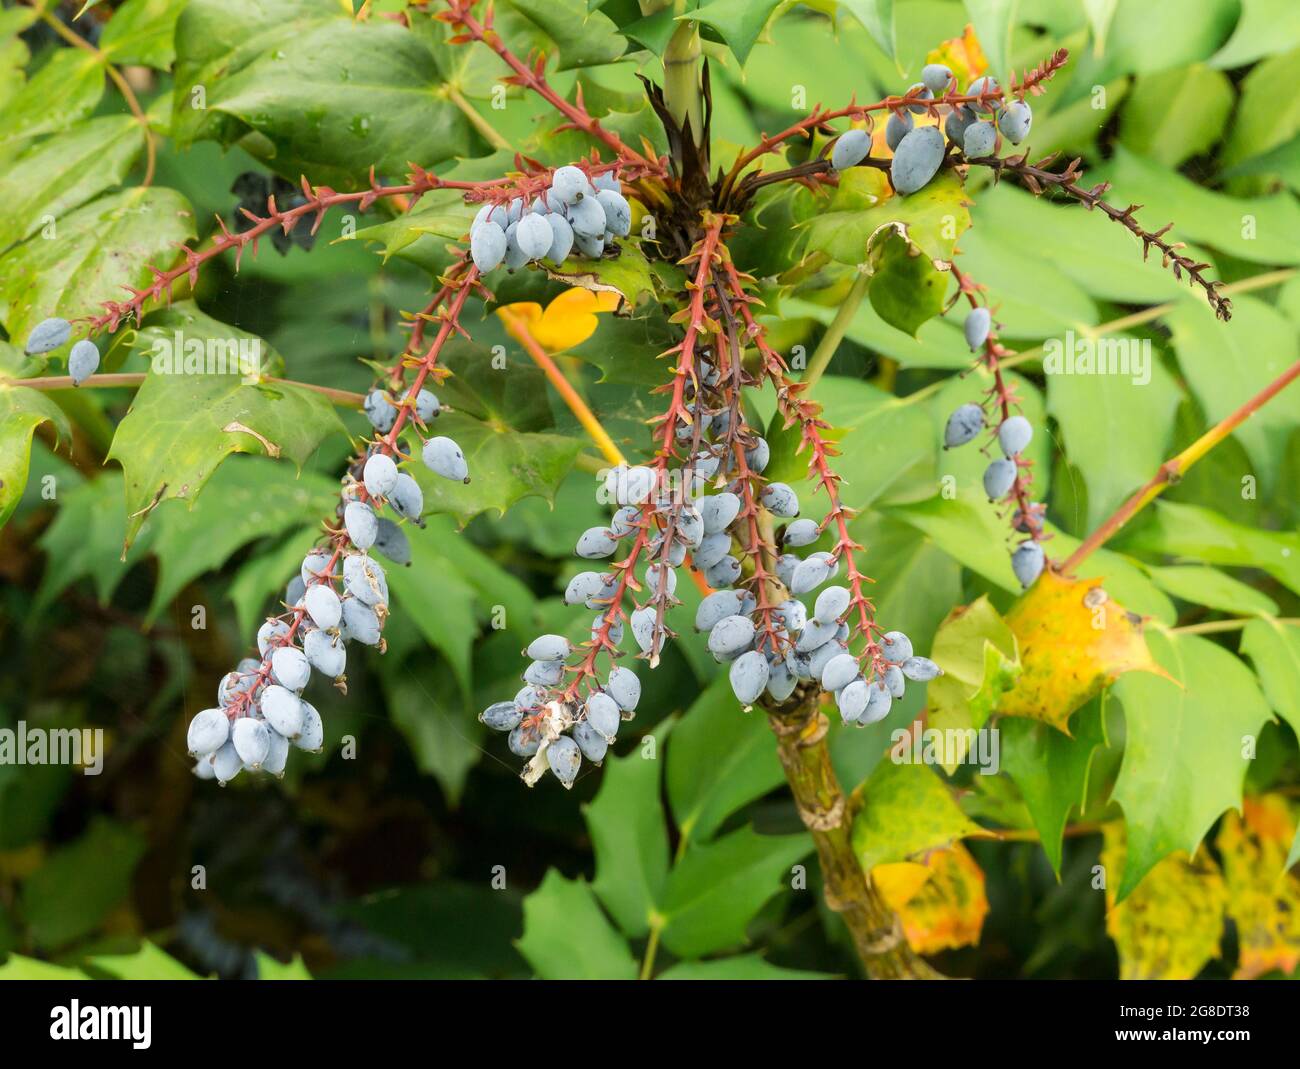 Mahonia aquifolium blue berries in summer Stock Photo